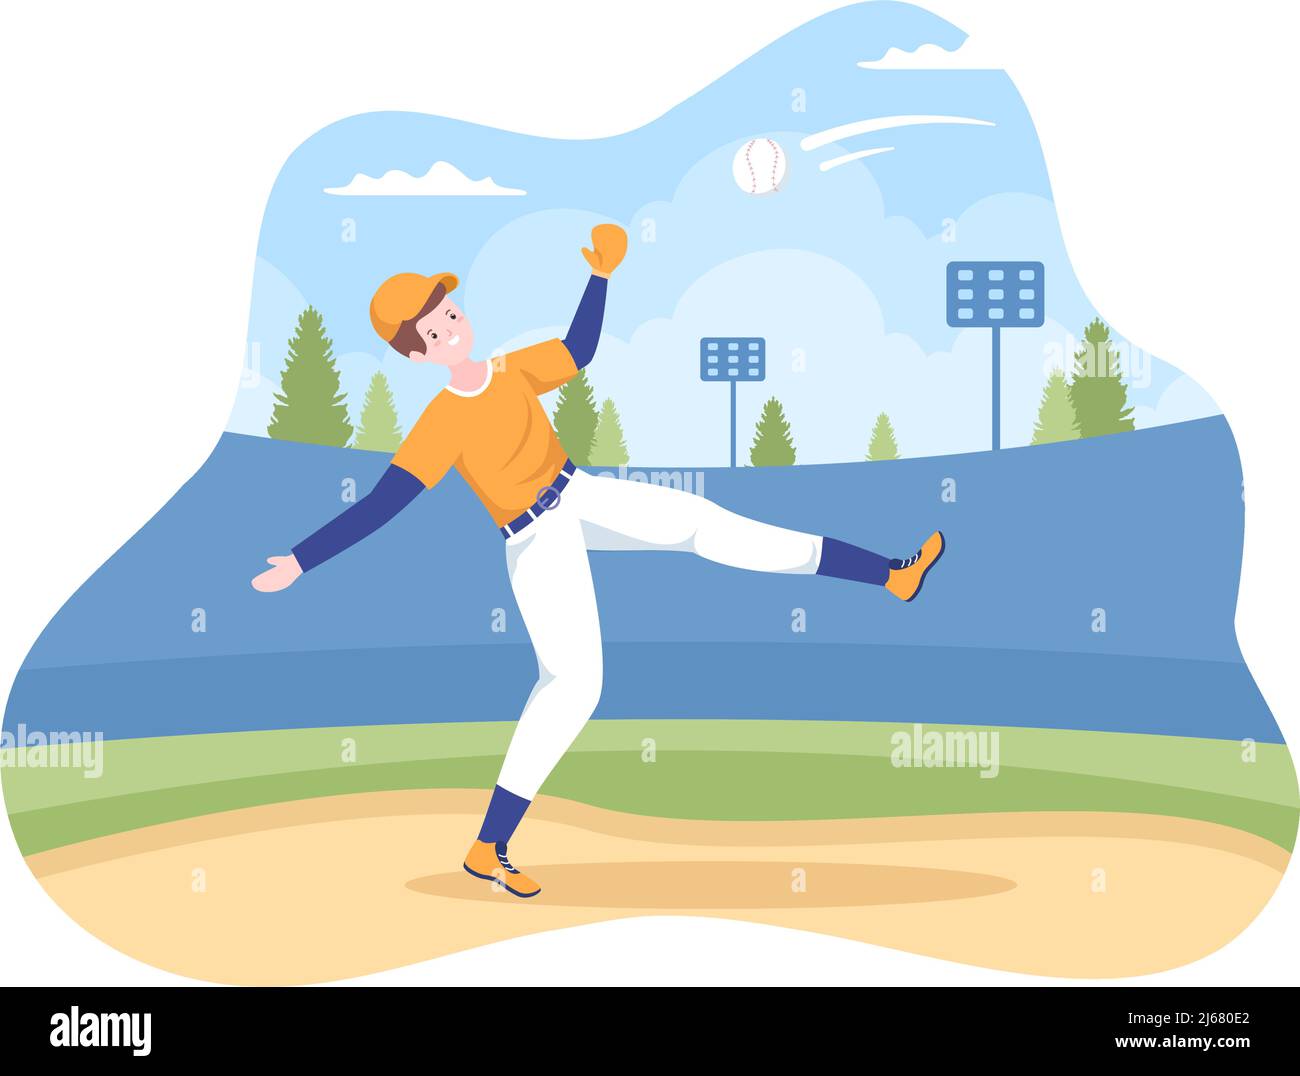 Joueur de baseball Sports lancer, attraper ou frapper un ballon avec des battes et des gants portant un uniforme sur le court Stadium dans l'illustration du dessin animé plat Illustration de Vecteur